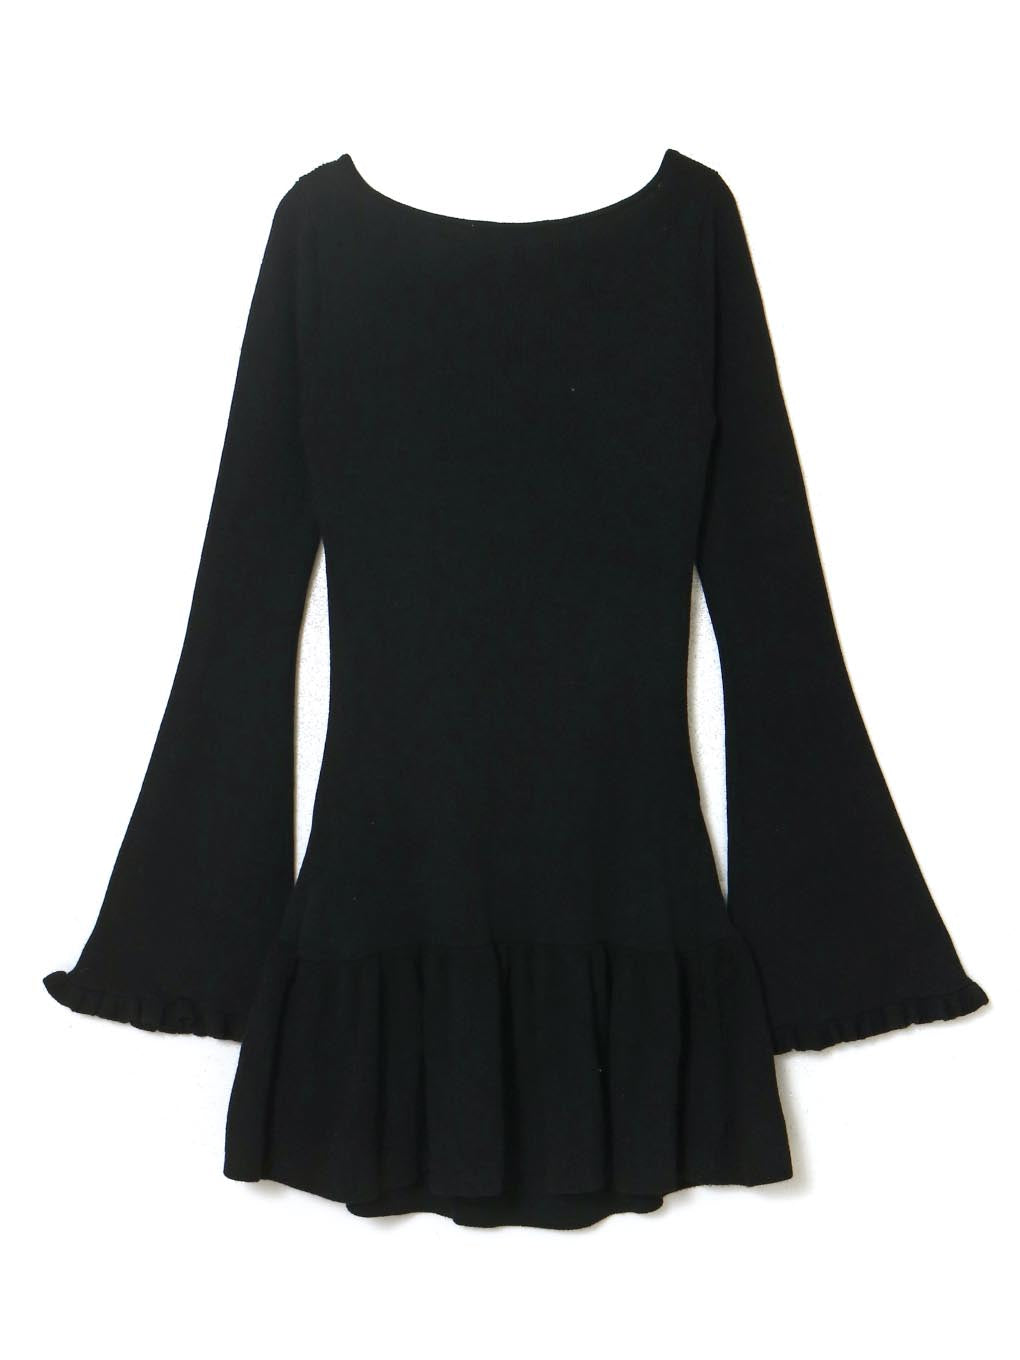 Fleur knit mini dress black 黒ファッション